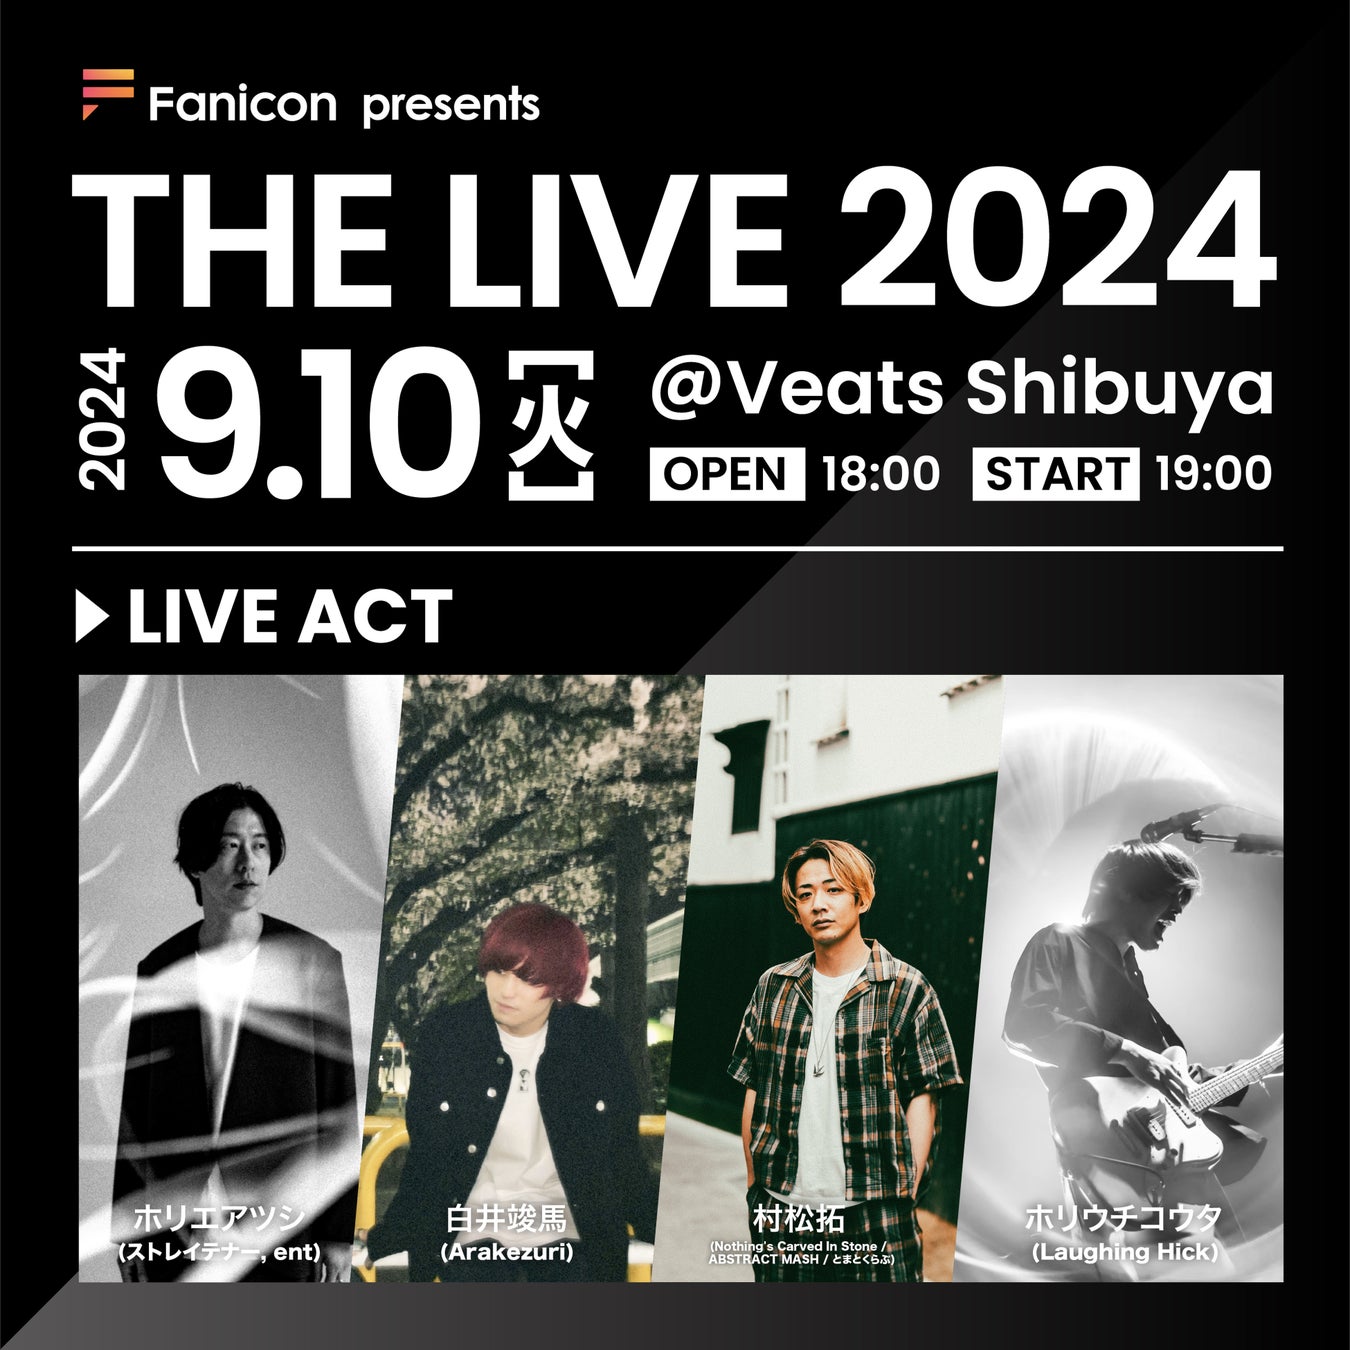 THECOO主催【Fanicon presents THE LIVE2024】に、第三弾出演アーティストとしてホリウチコウタが追加出演決定！8月9日よりチケット先行販売を開始